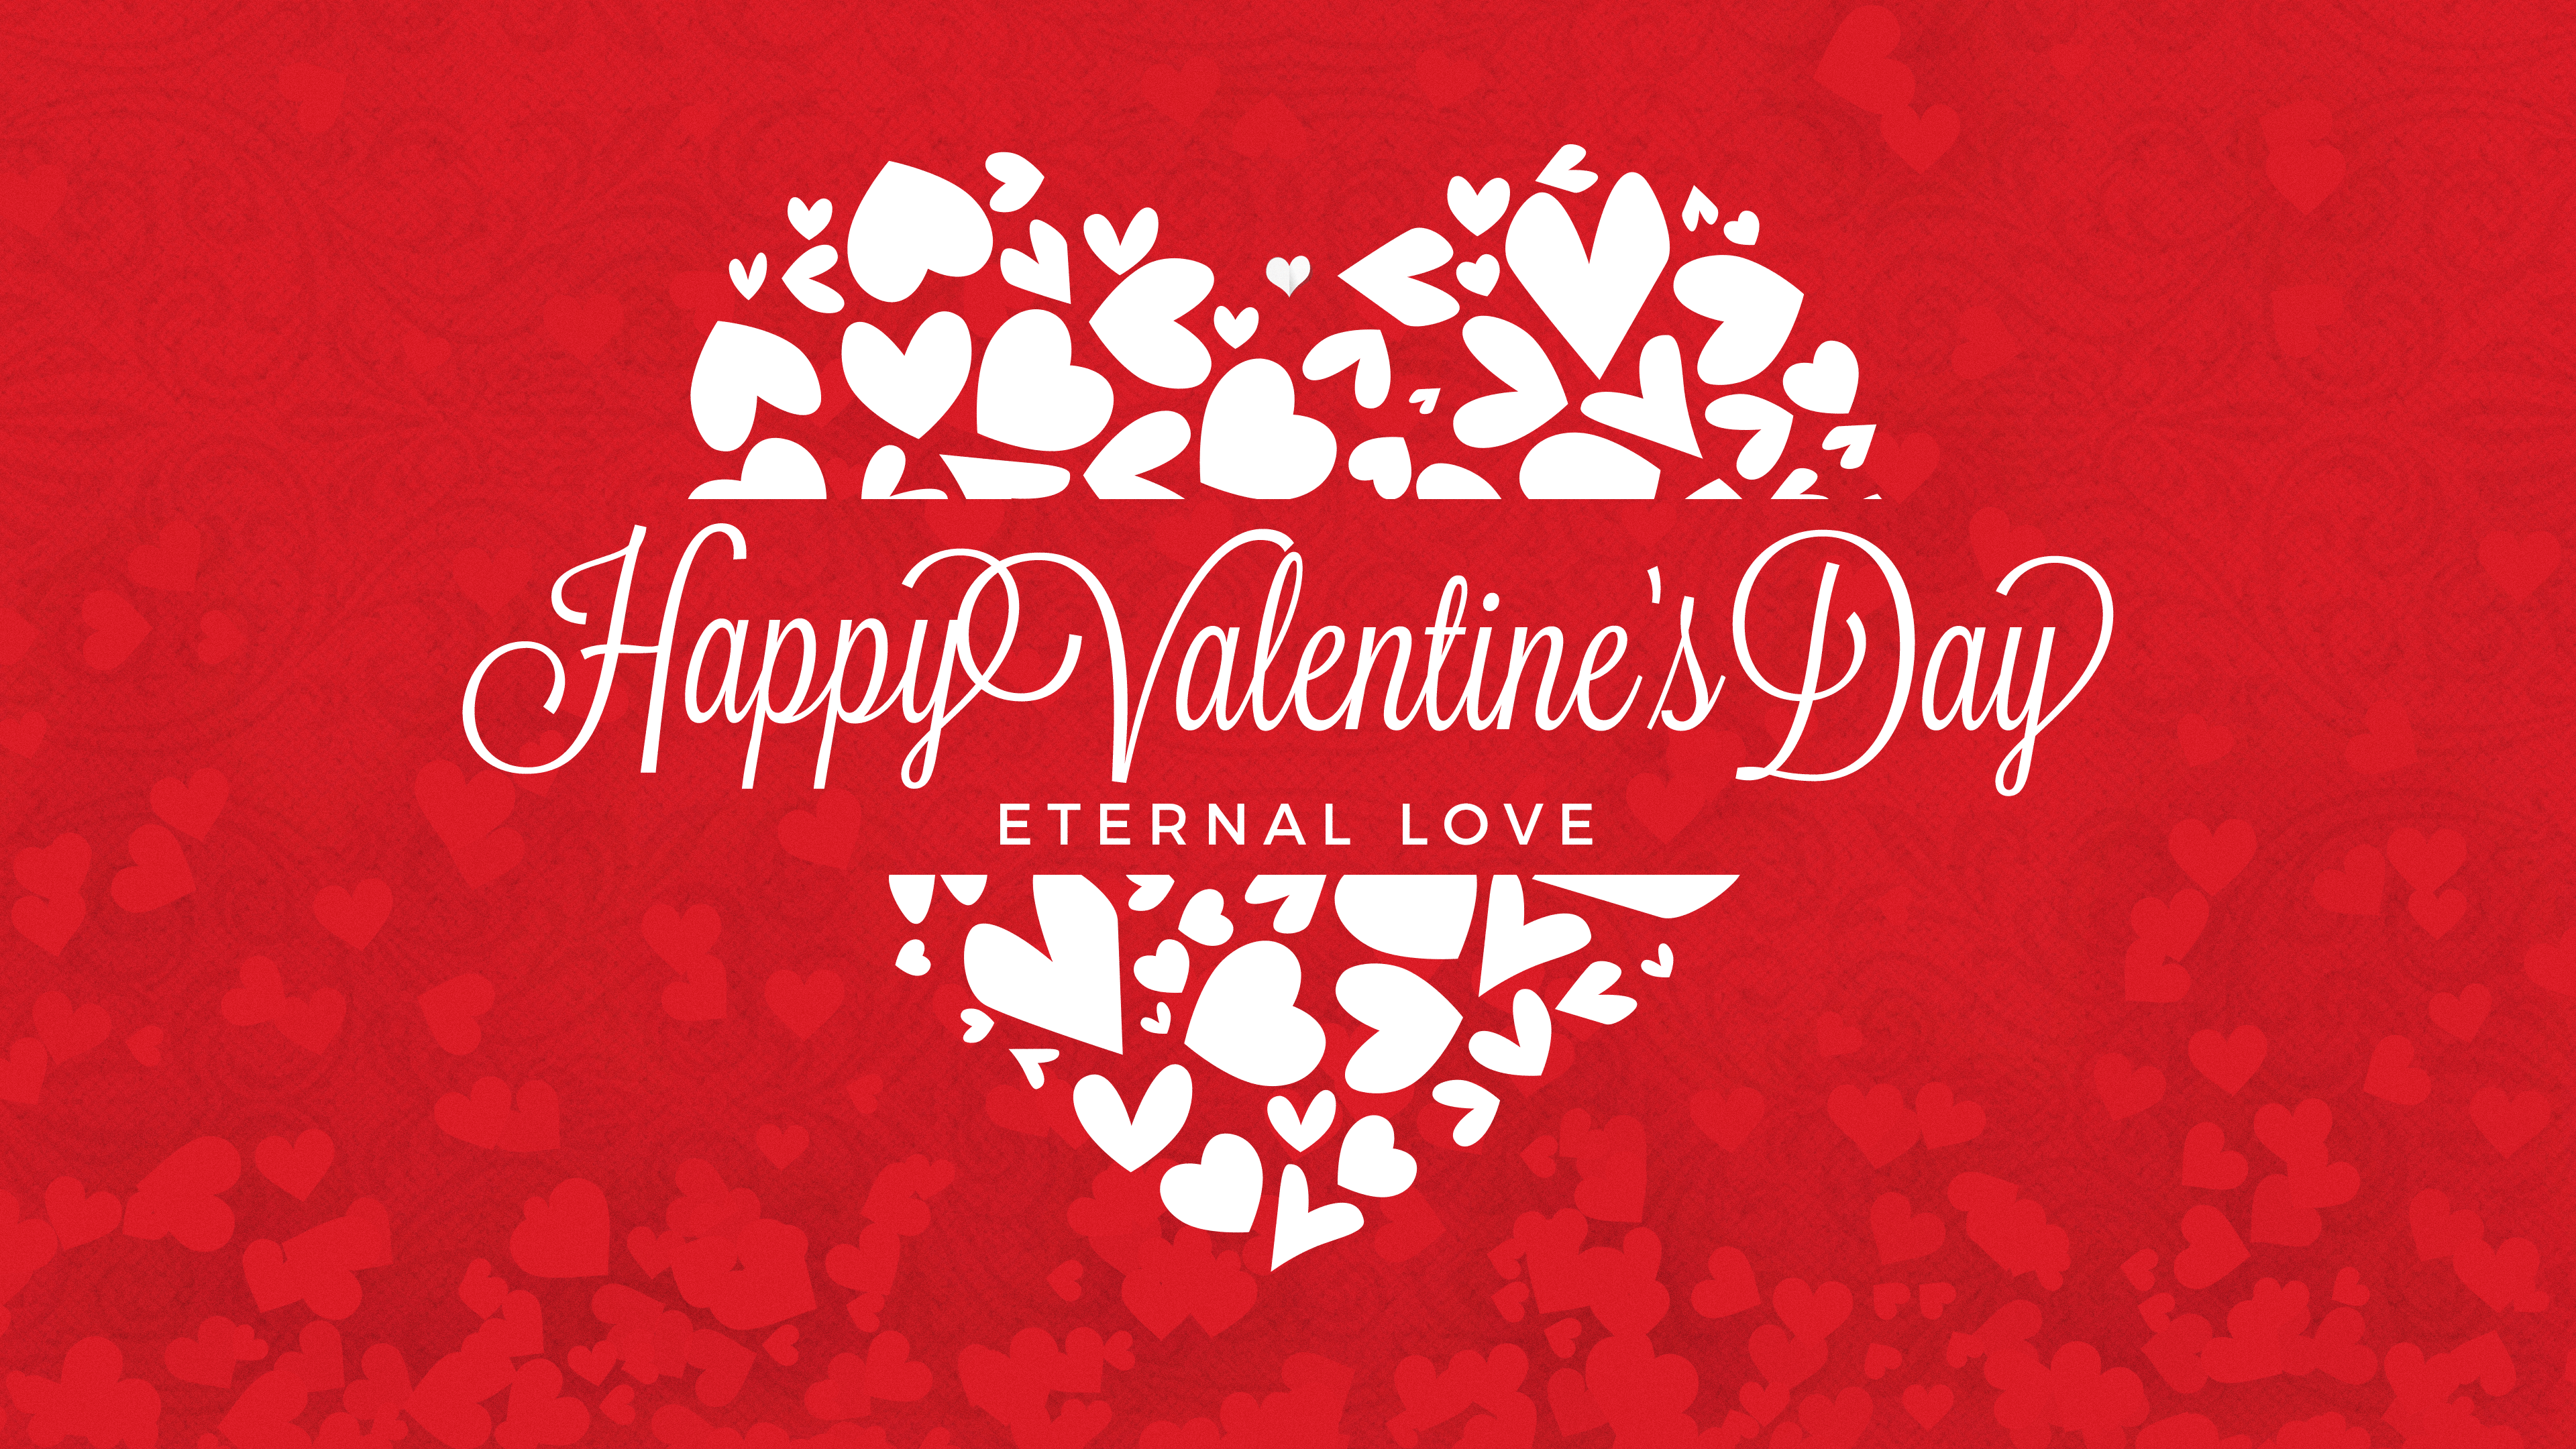 Happy Valentine's Day ETERNAL LOVE